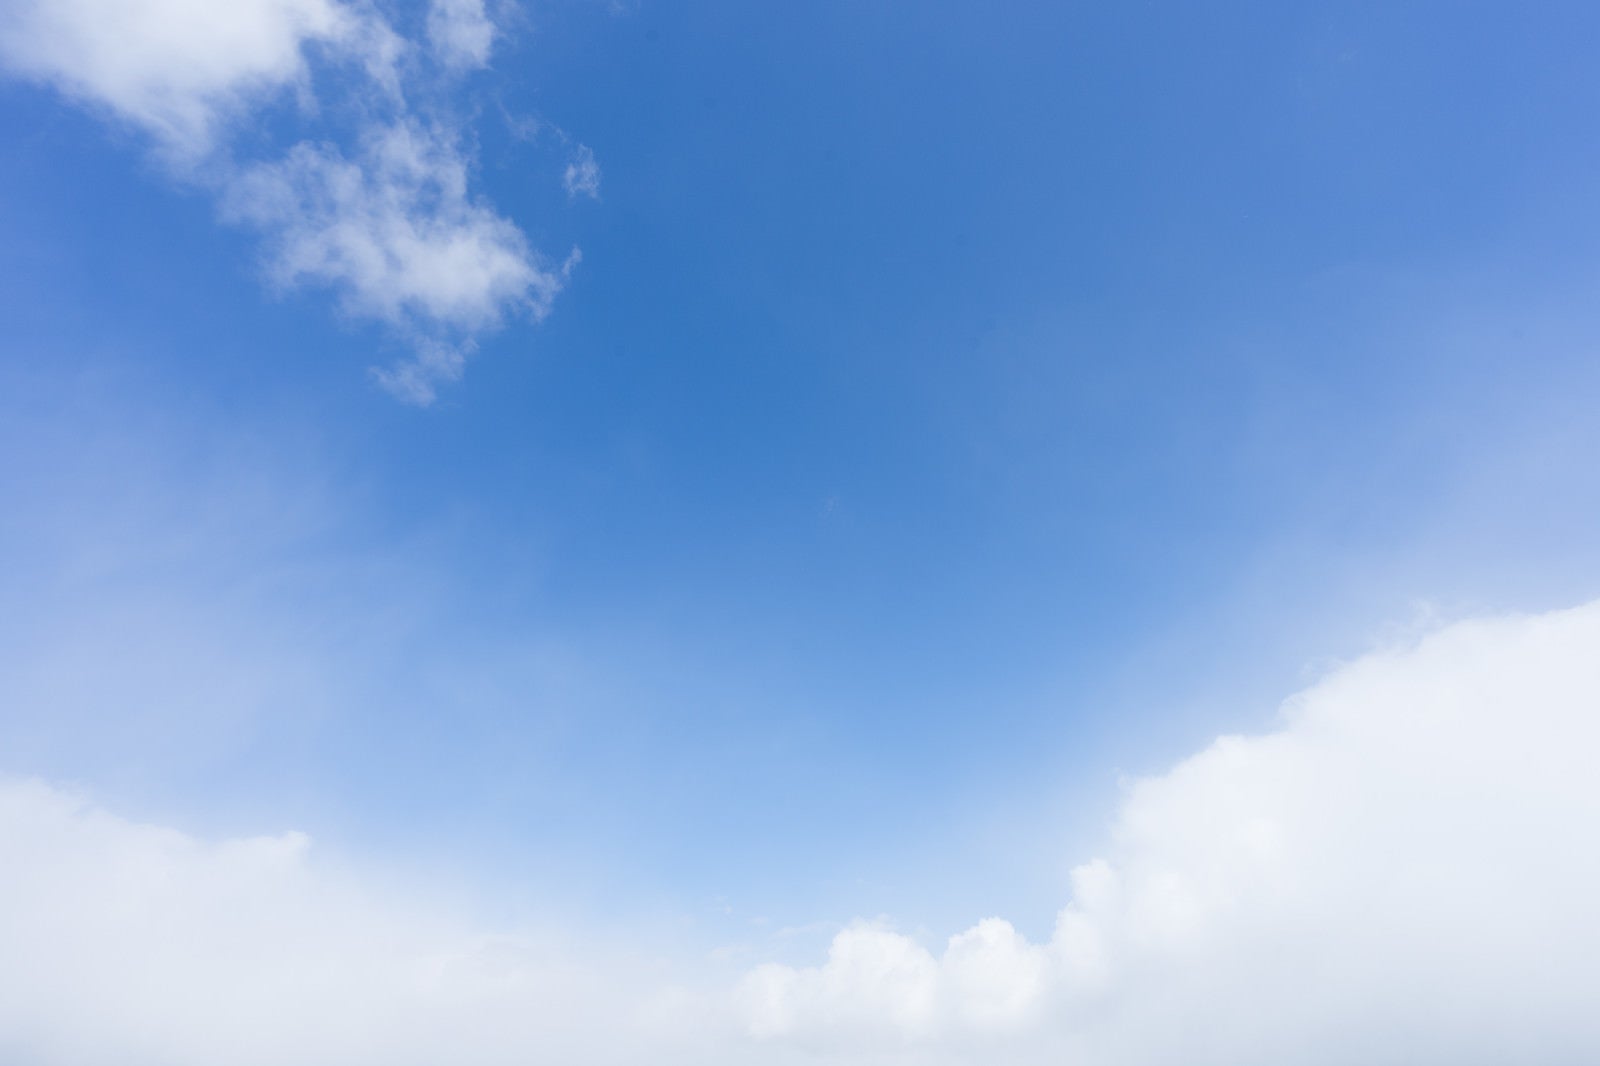 「青空と雲がふわふわ」の写真